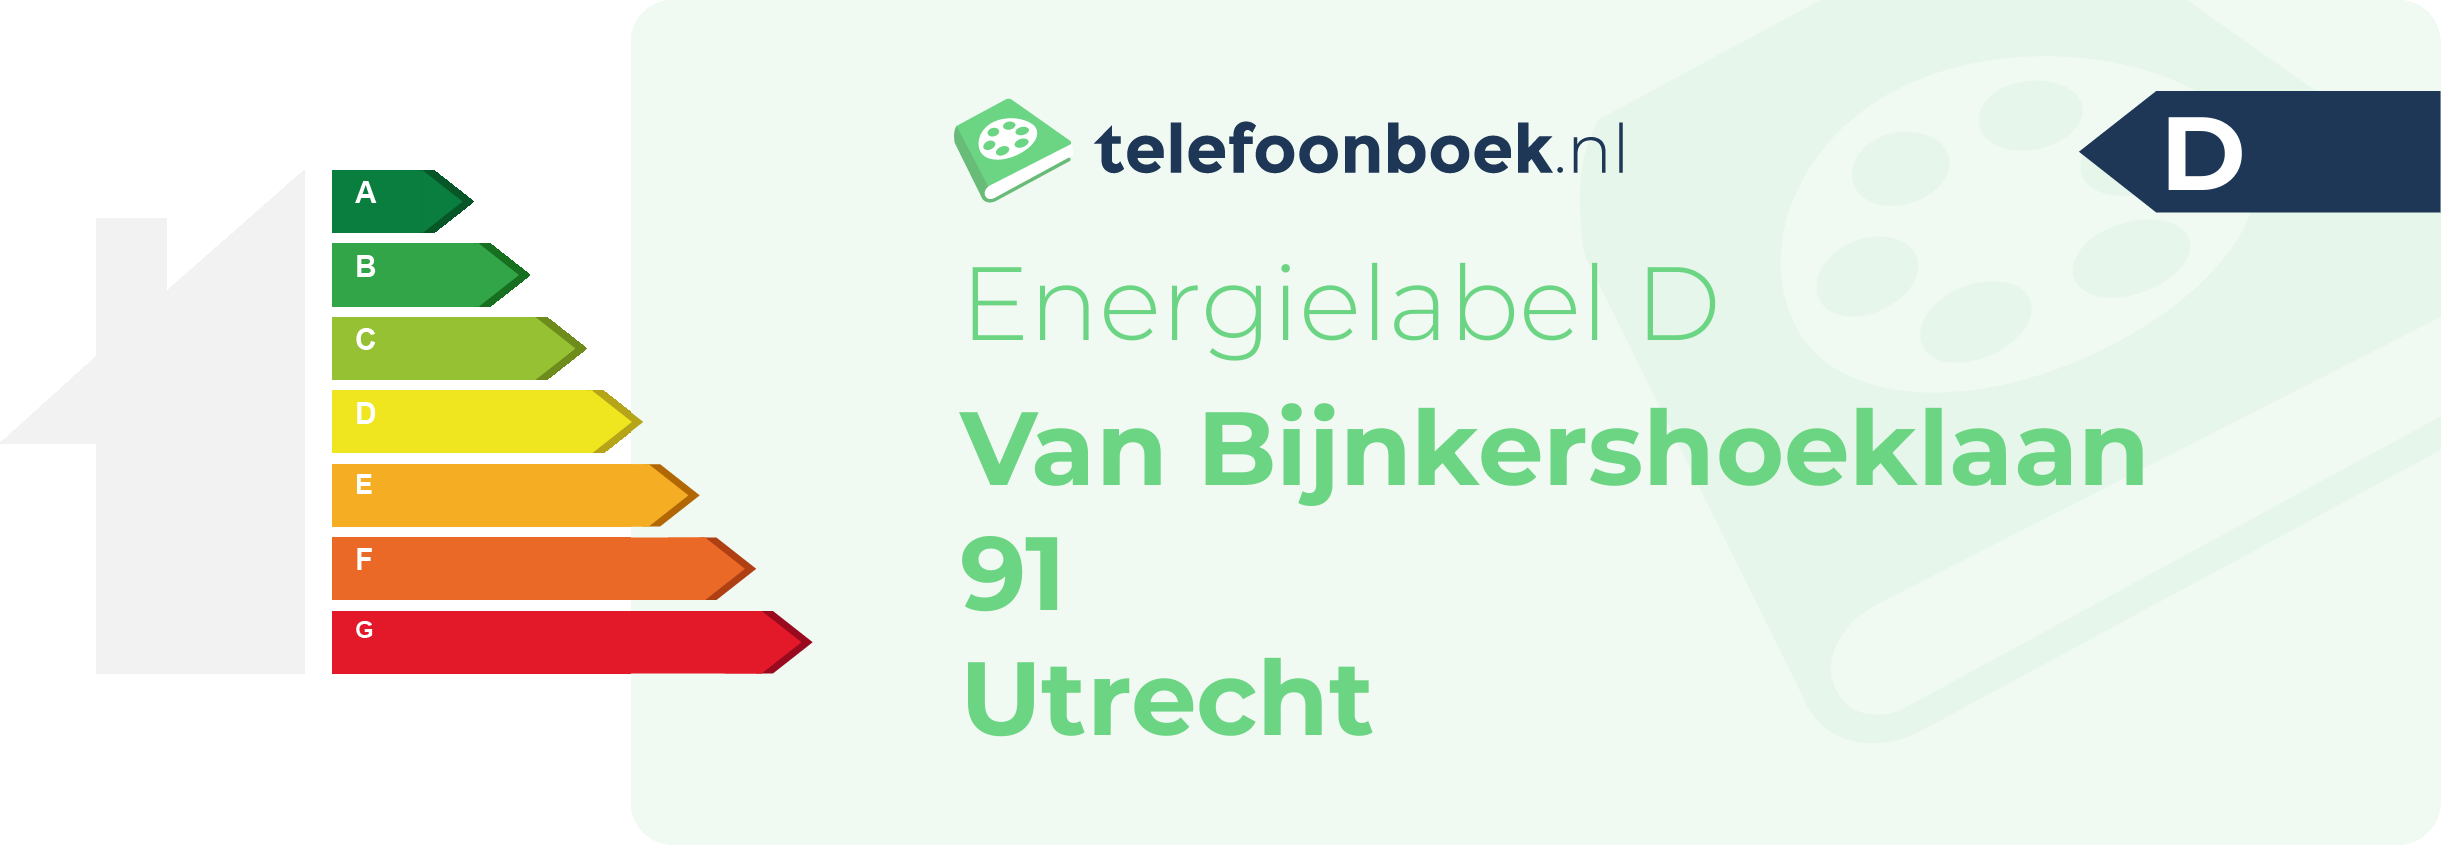 Energielabel Van Bijnkershoeklaan 91 Utrecht